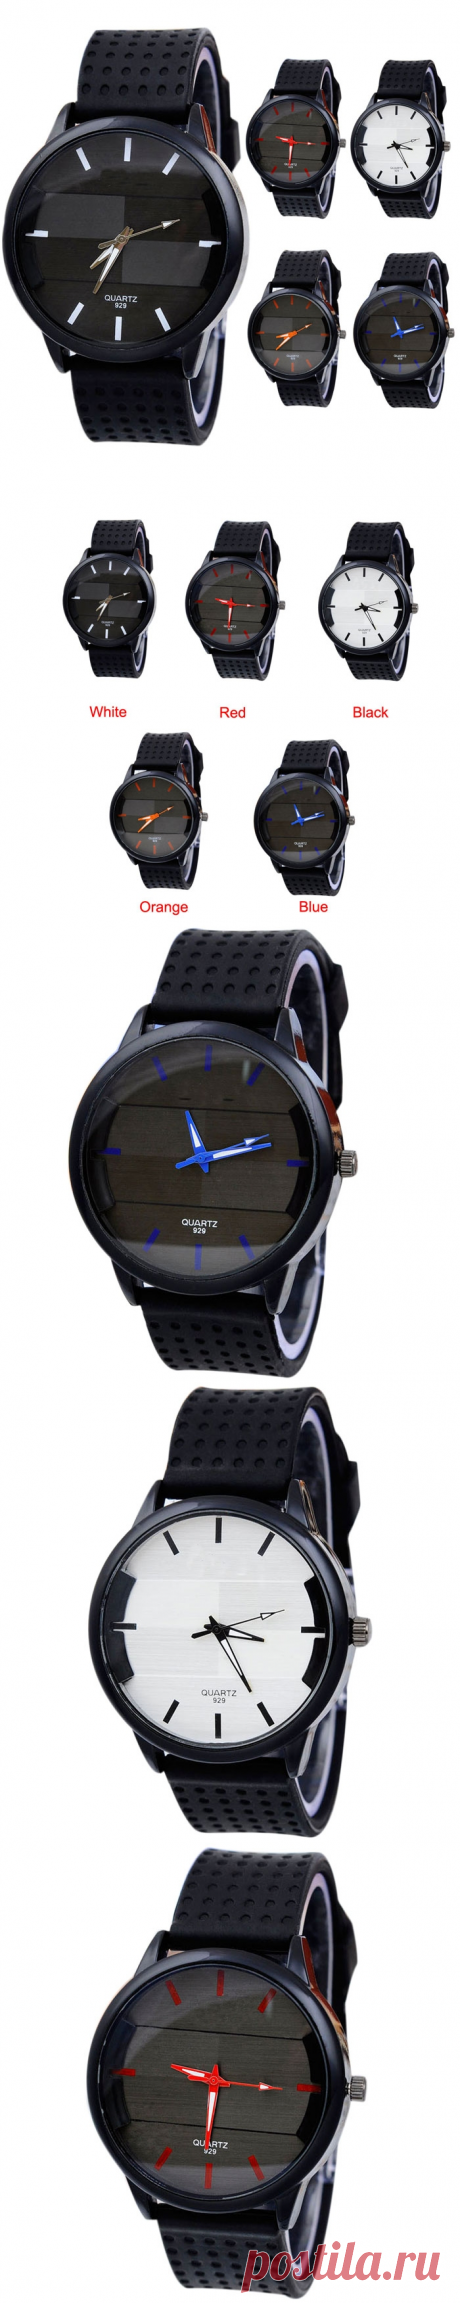 Мужские наручные часы с цветными стрелками и силиконовым ремешком (в наличии черно-синие) - Часы / СЮРПРАЙЗ